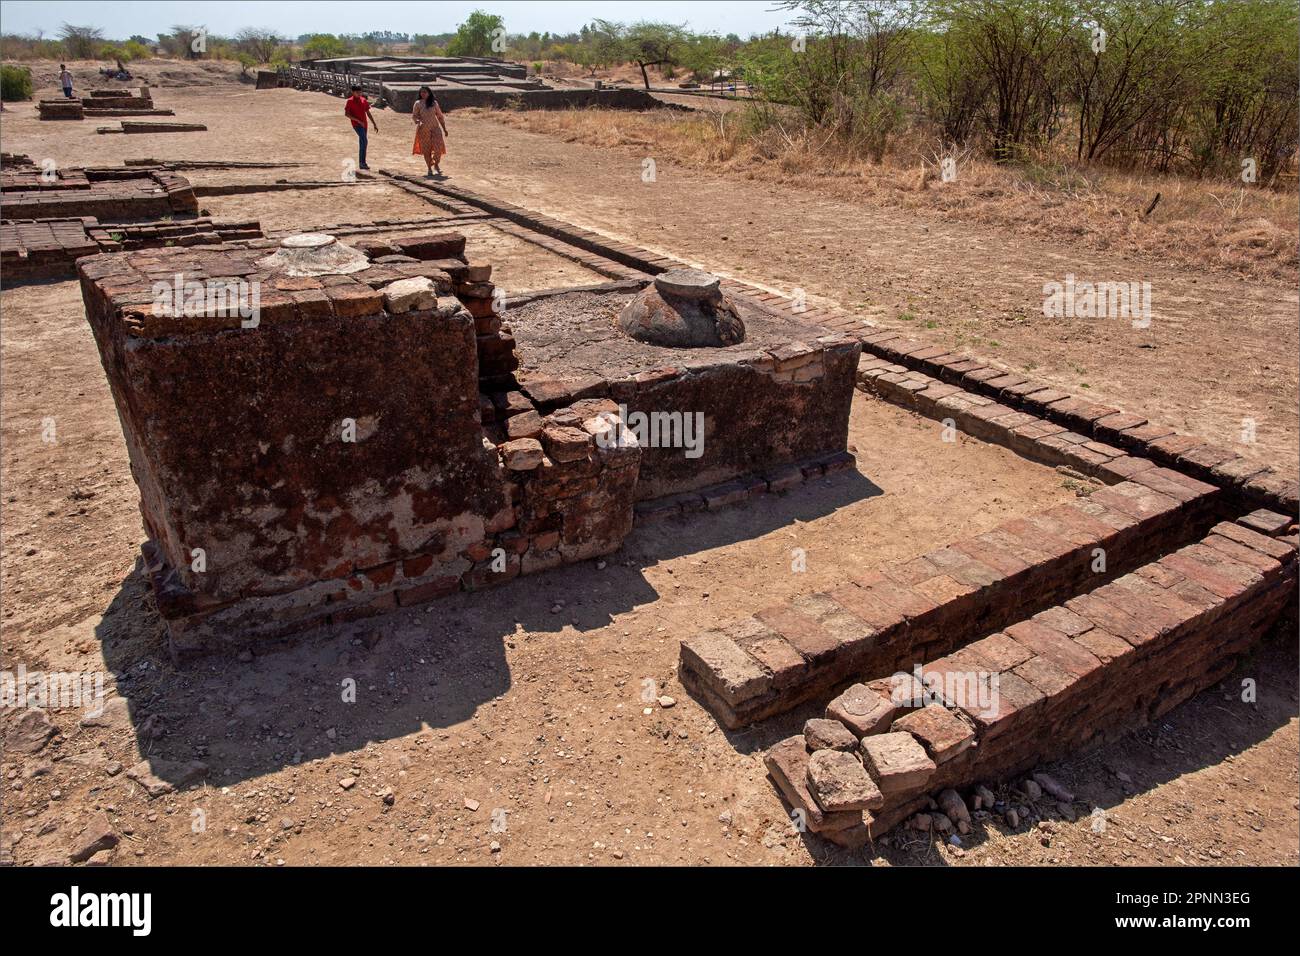 Lothal war eine der südlichsten Stätten der antiken Zivilisation im Indus-Tal, die sich in der Bhal-Region des indischen Bundesstaates Gujarat, Indien, befindet. Stockfoto